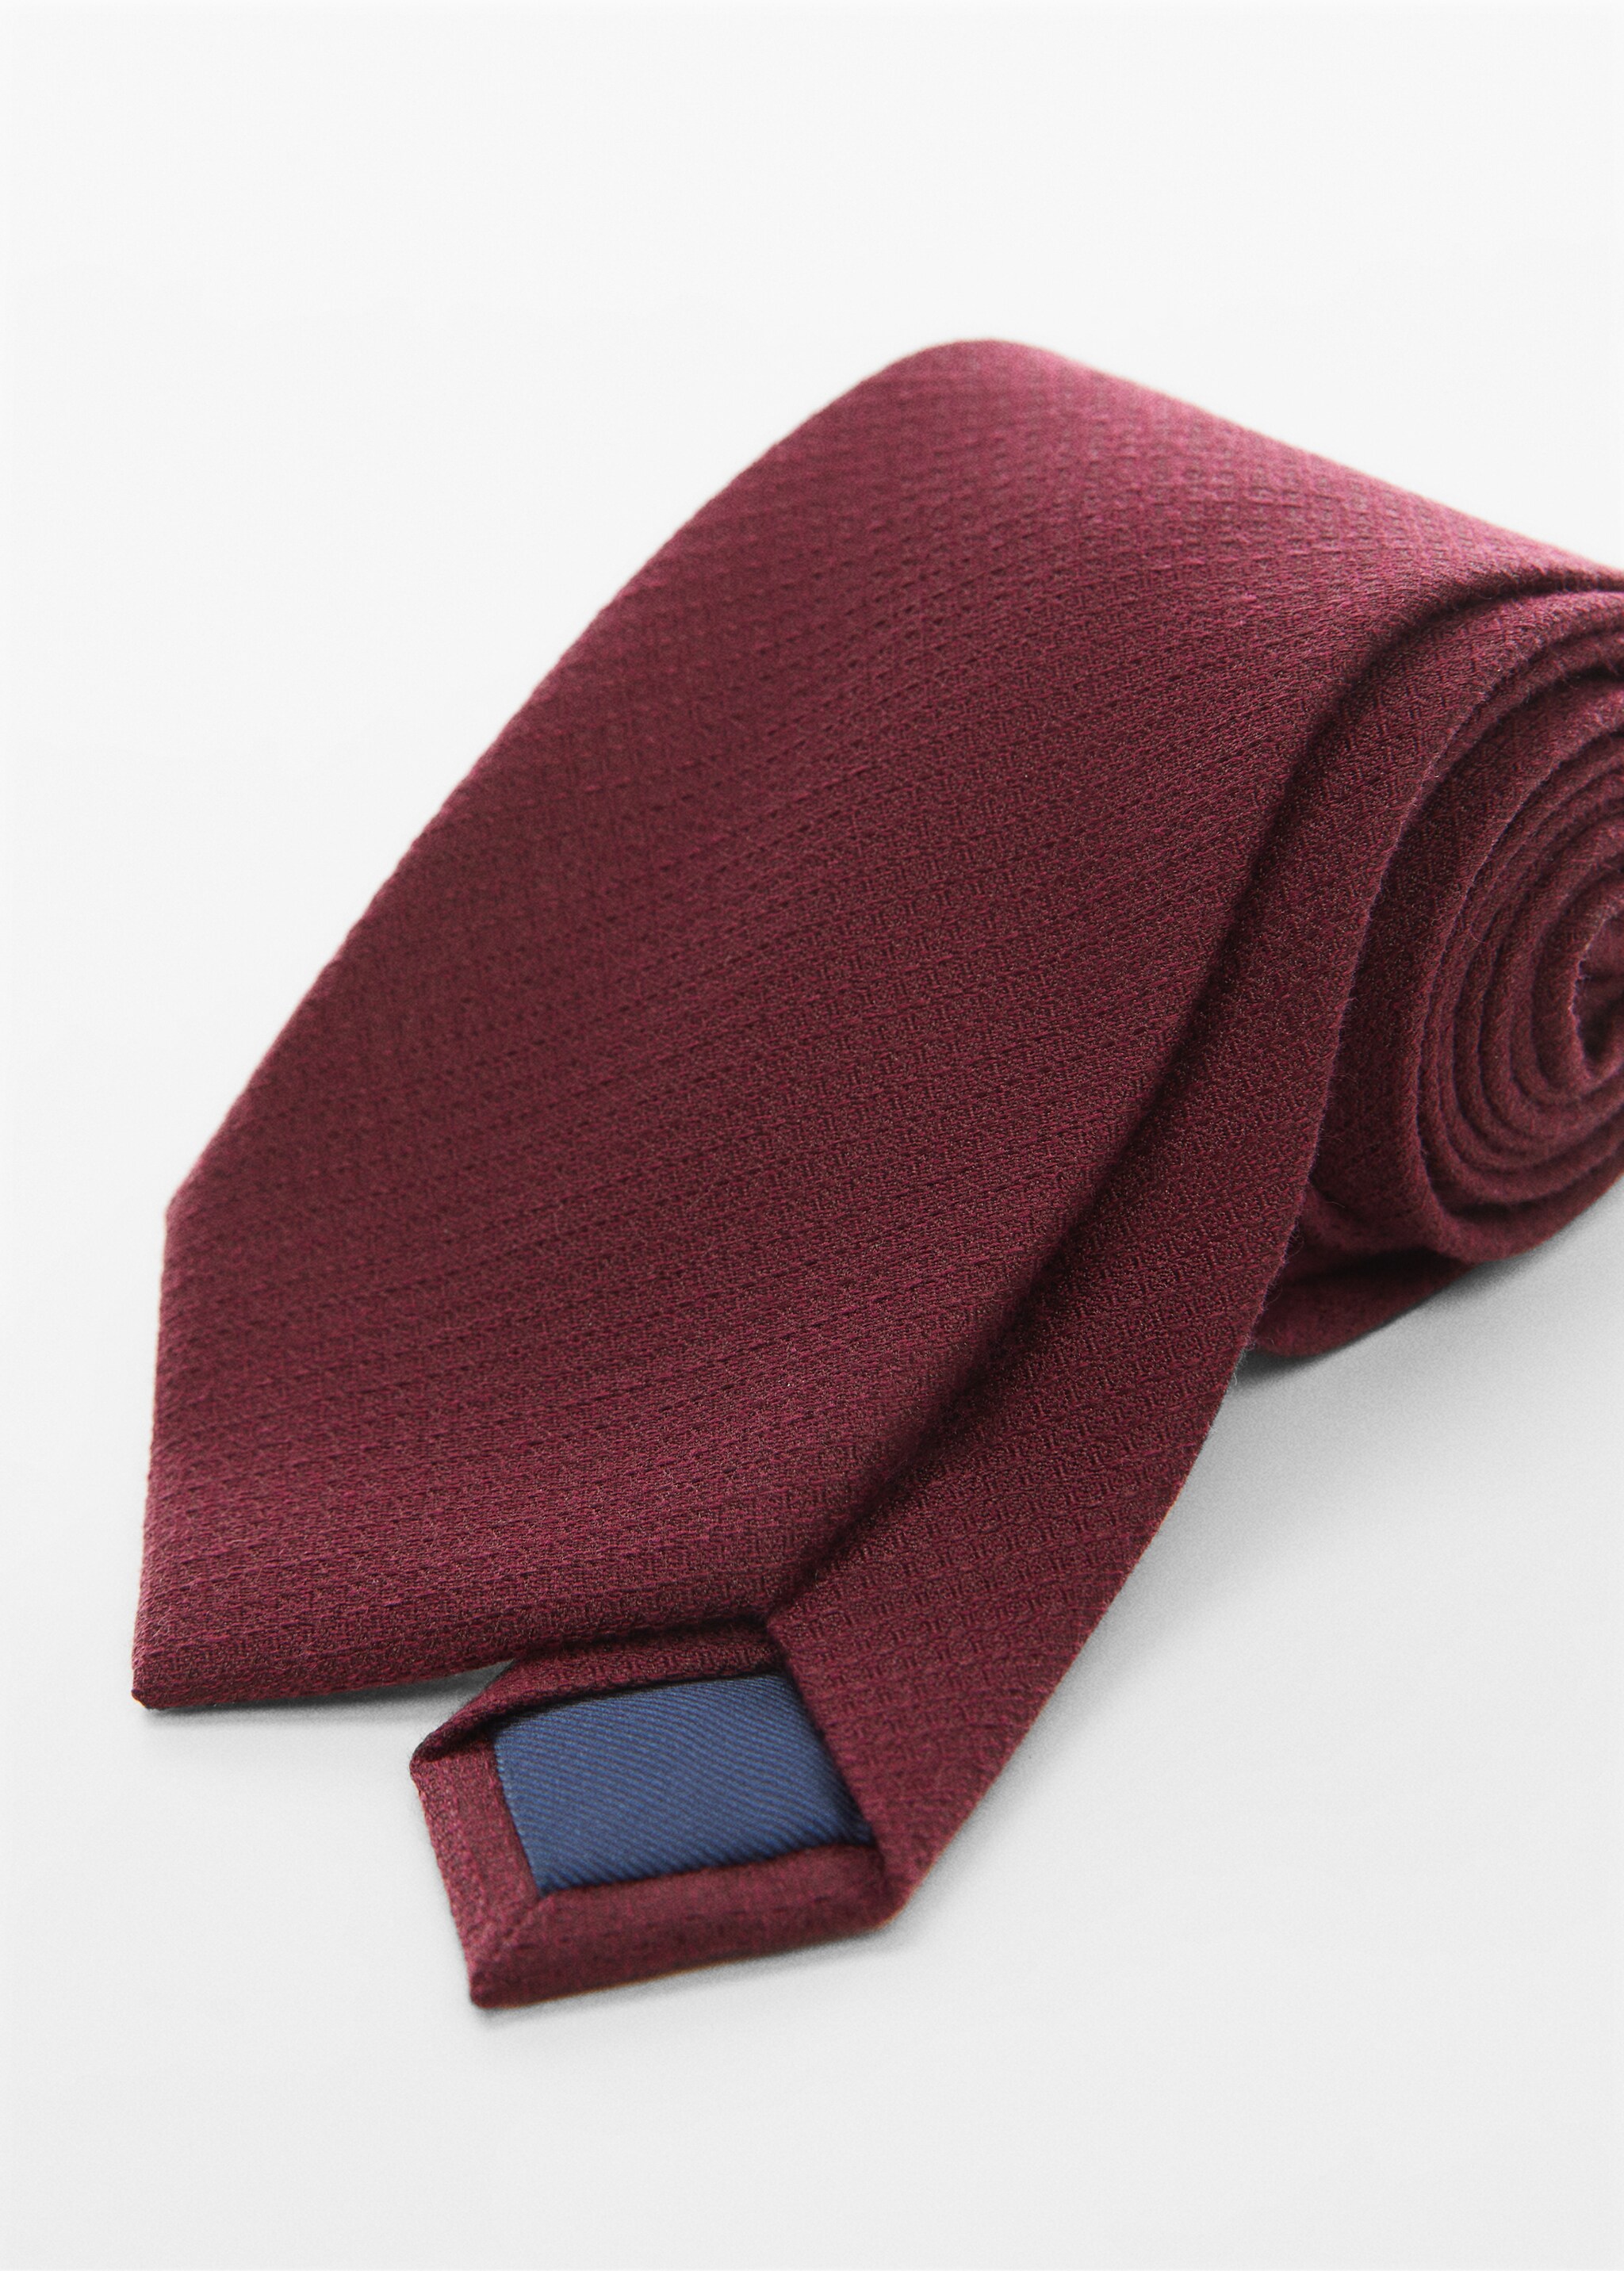 Фактурный галстук из хлопка - Средний план